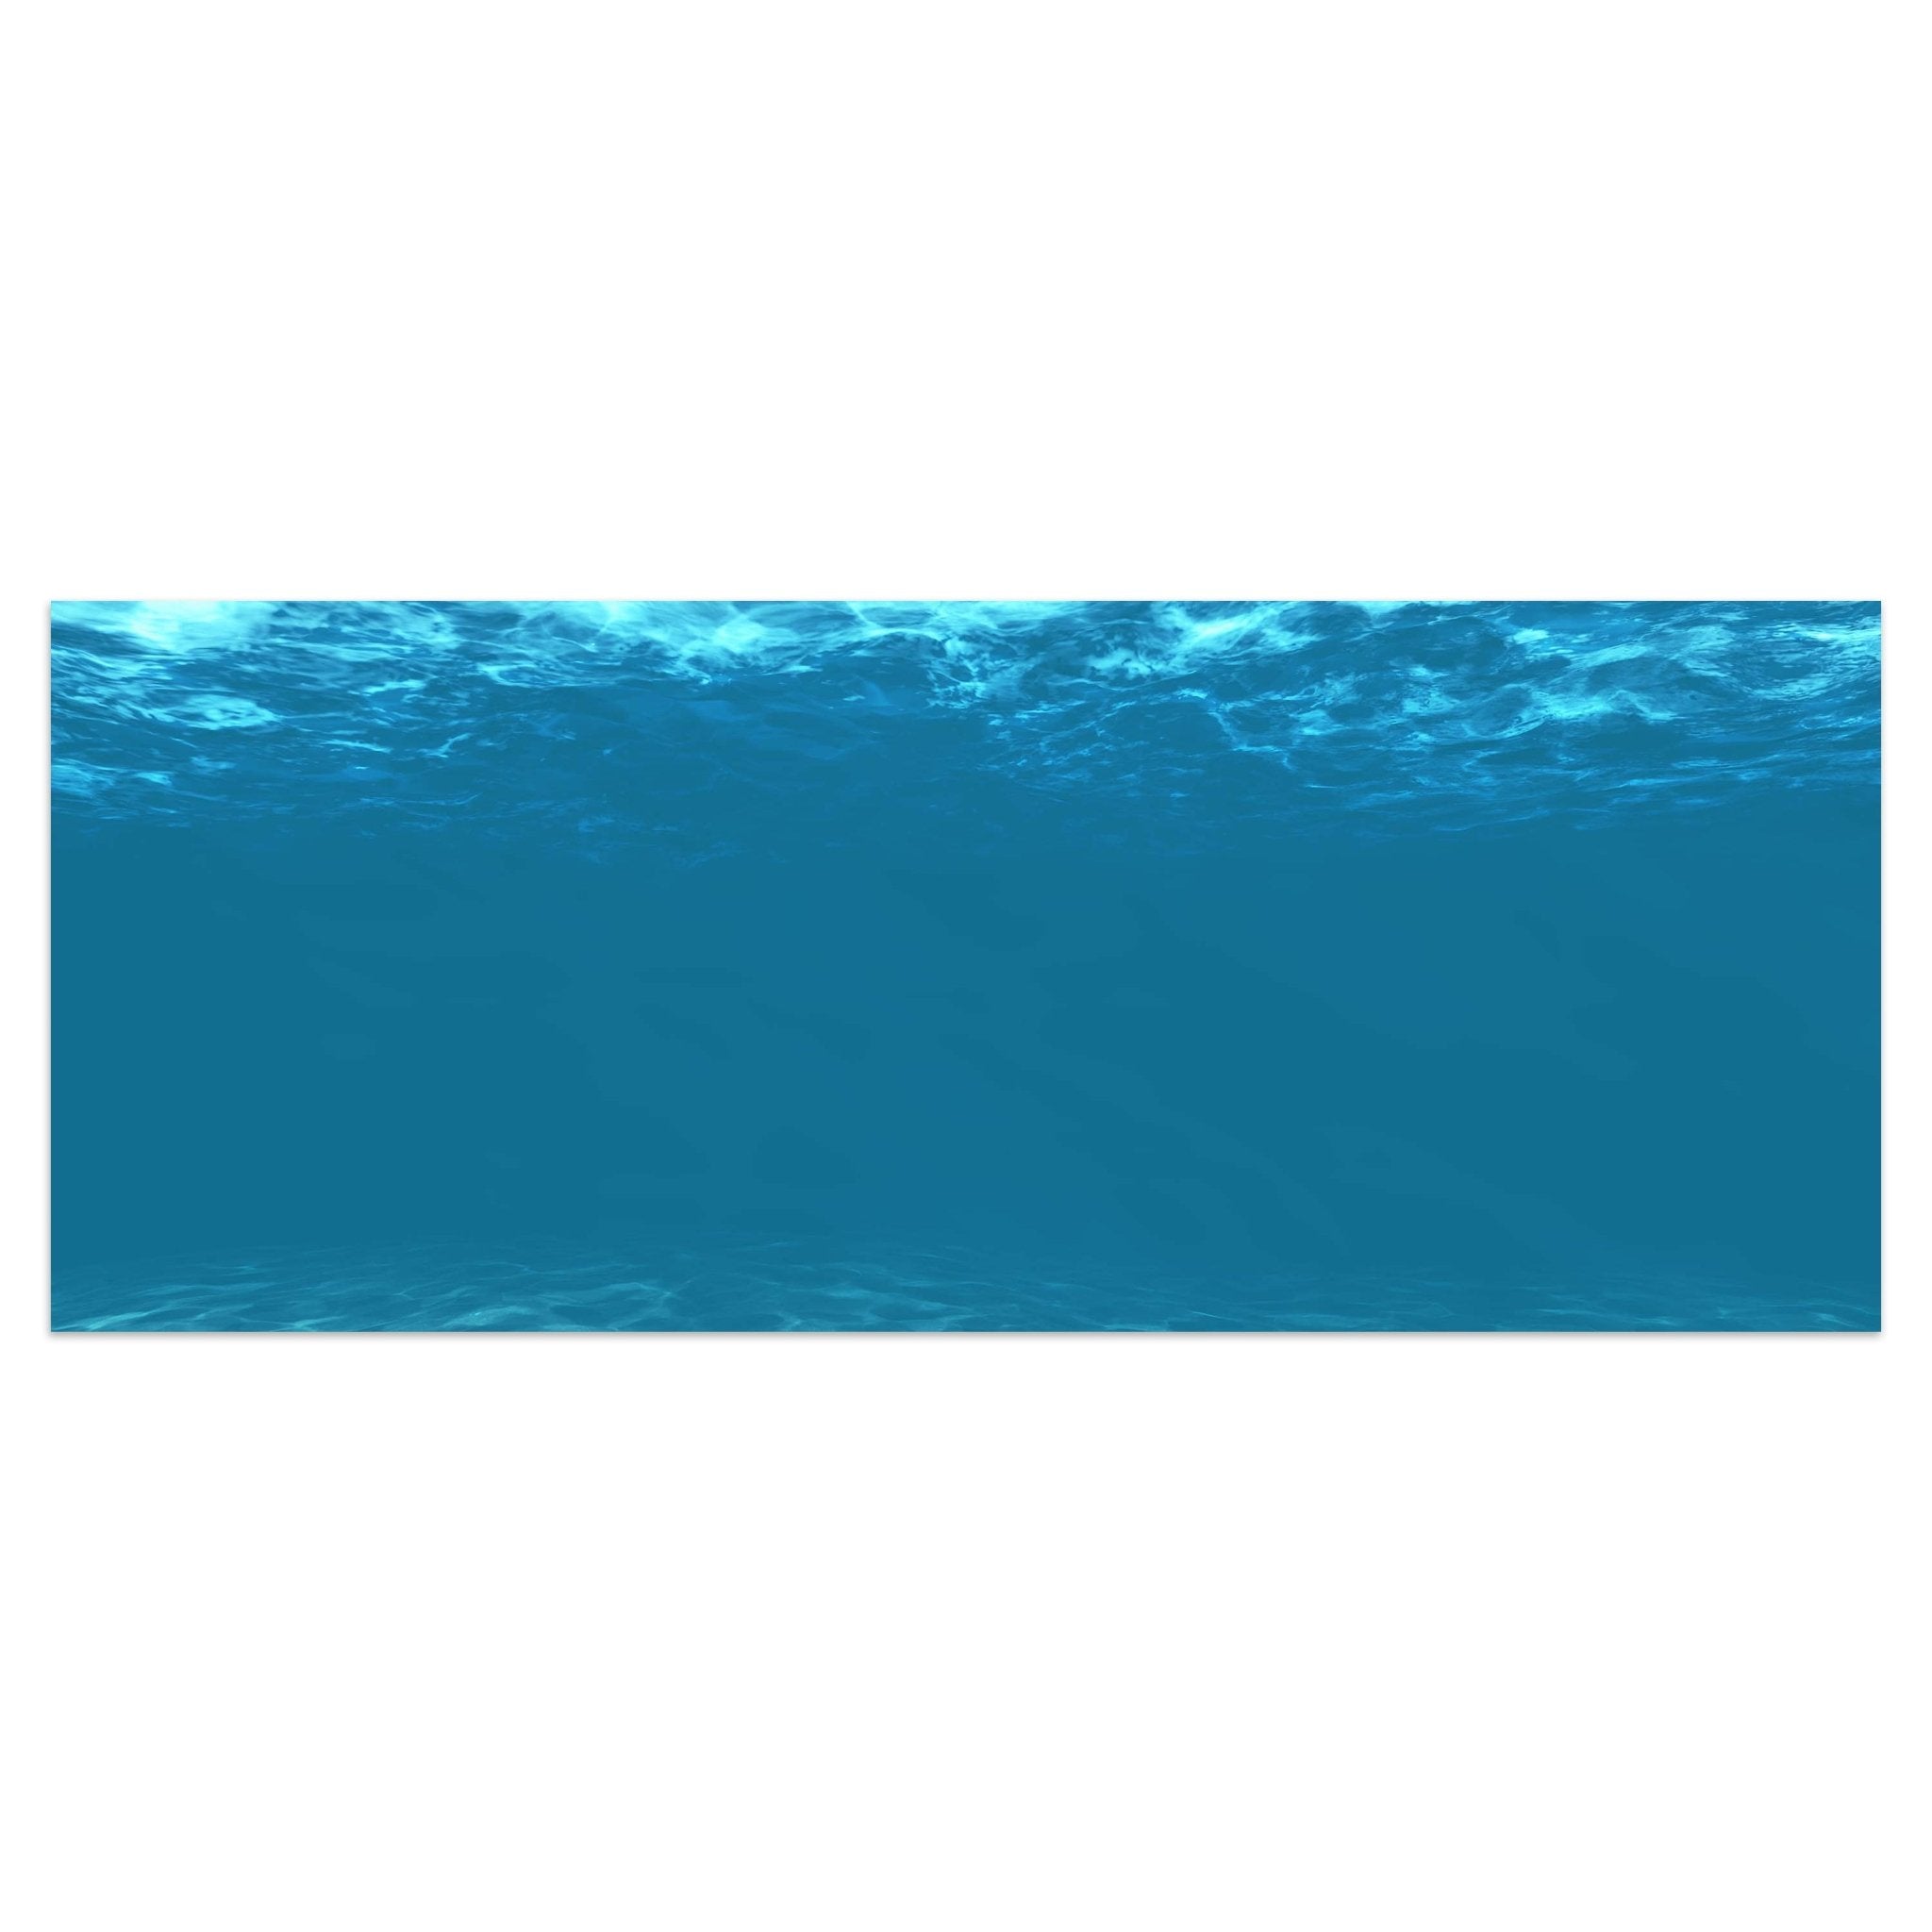 Leinwandbild Hellblau unter Wasser M1053 kaufen - Bild 1